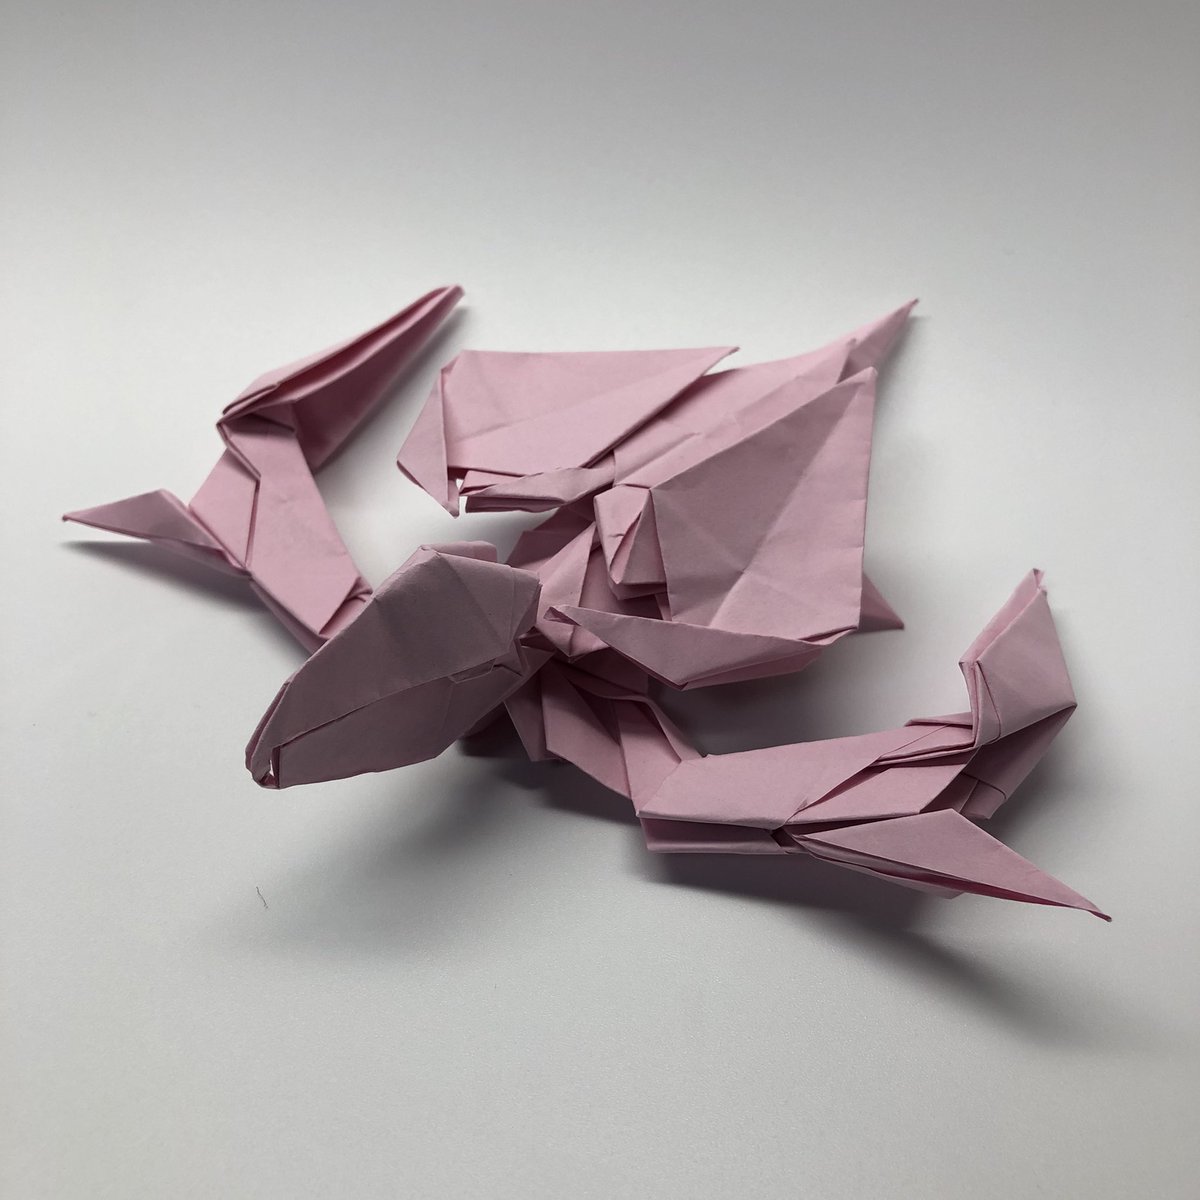 りょうすけ 組み立て折神工房assembly Origami Workshop 作品no 213 ウミガメ 13枚 テーマ ウミガメ カメの甲羅のようなパーツが完成したので そこからの発想力を働かせてできた作品です 折り紙 オリジナル折り紙 オリジナル作品